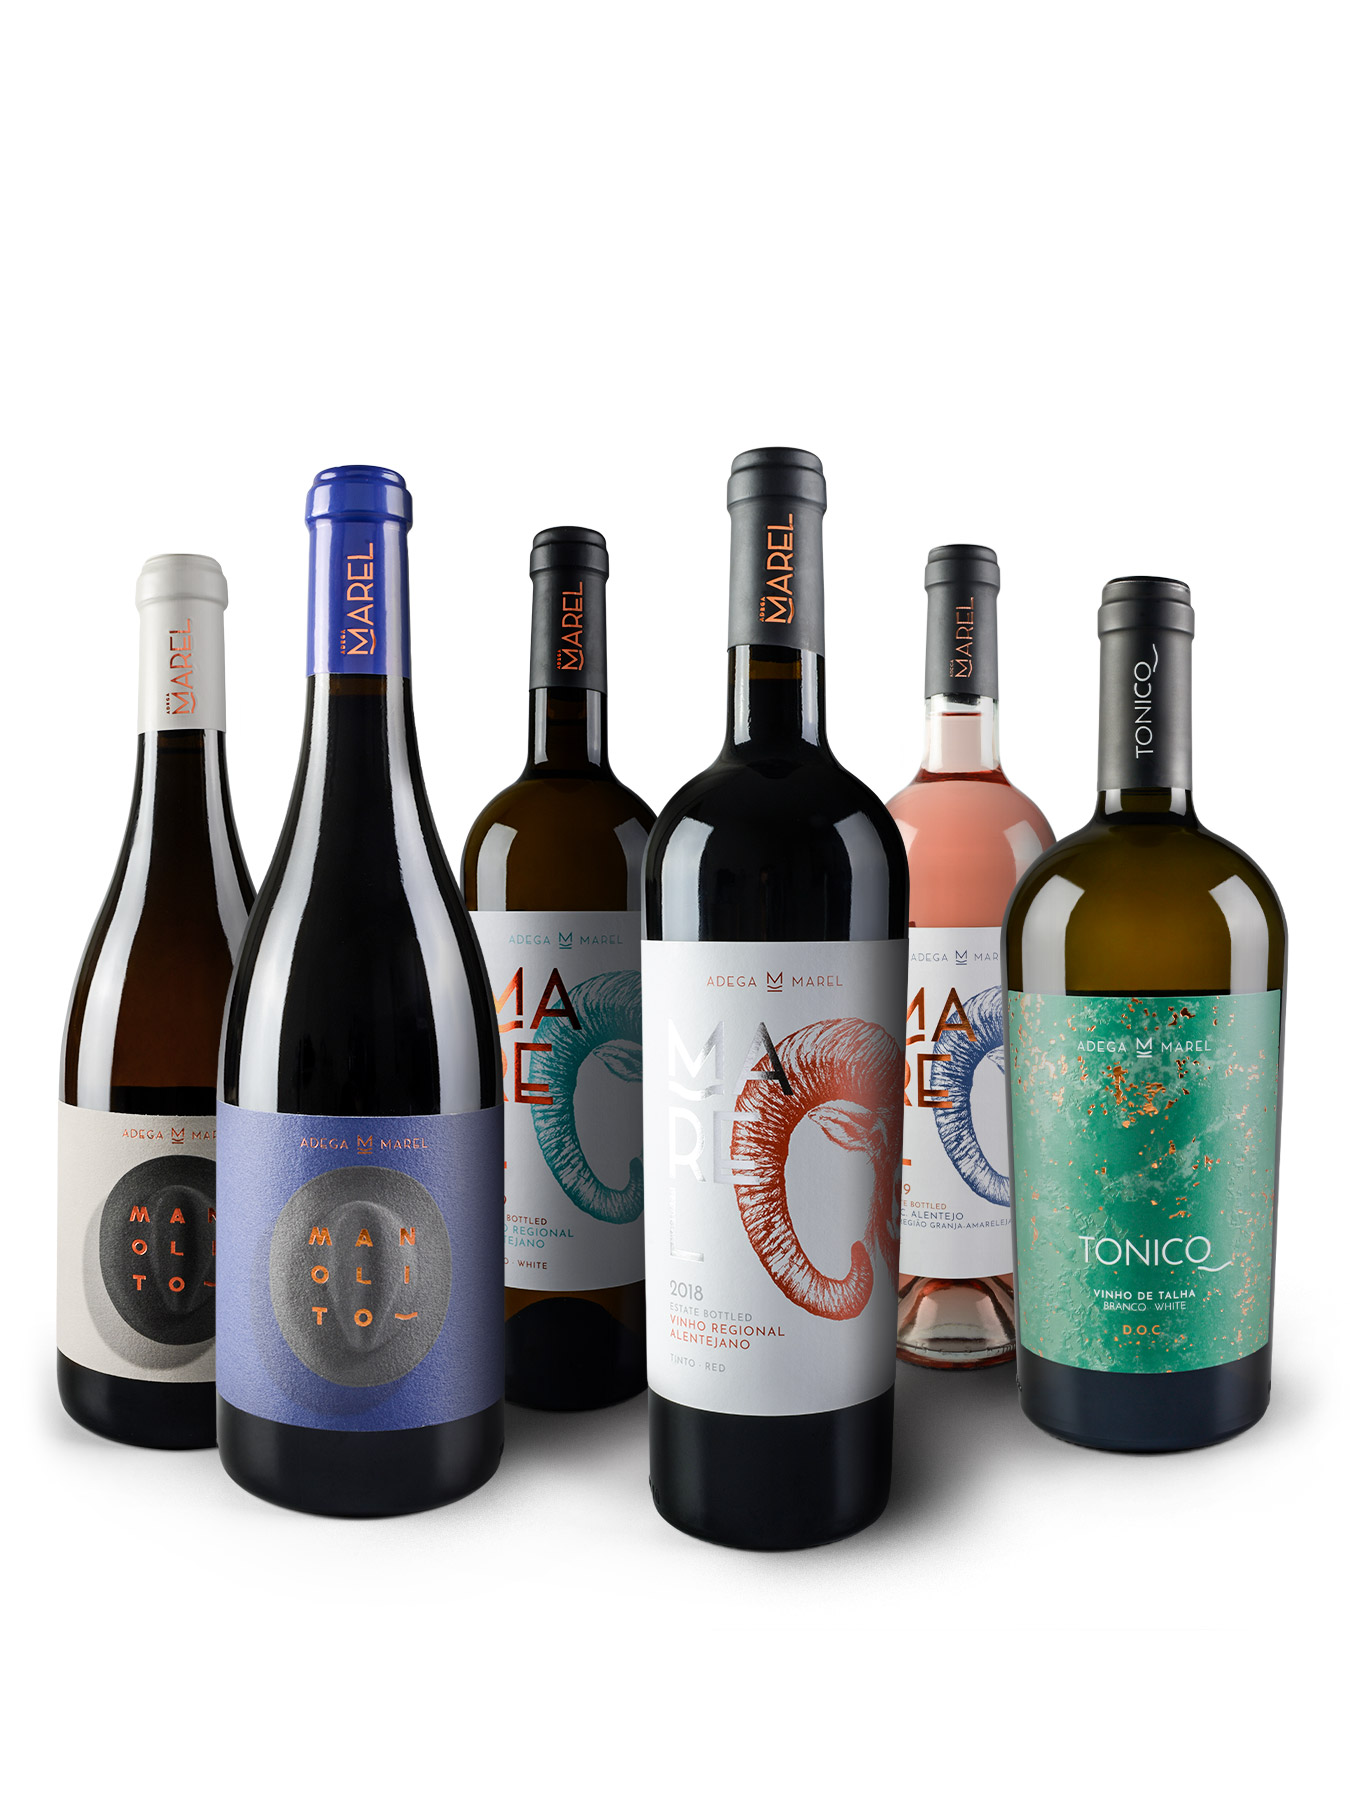 Garrafas de vinho da Adega Marel: Manolito Branco; Manolito Tinto; Marel Branco; Marel Tinto; Marel Rosé; e Tonico Branco